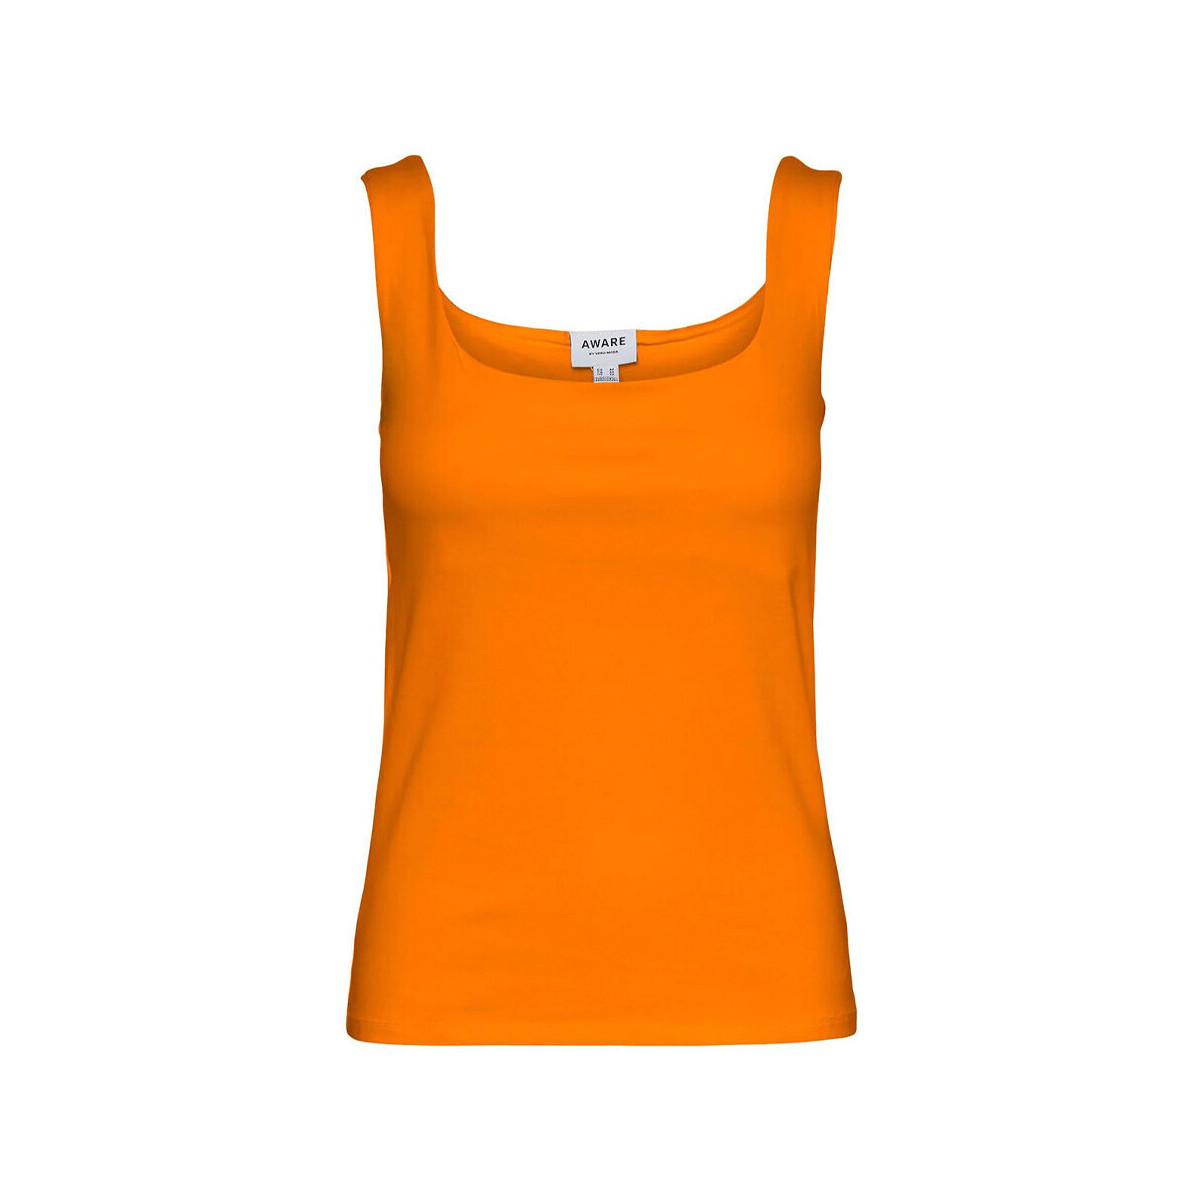 Vêtements Femme Débardeurs / T-shirts sans manche Vero Moda 10267649 Orange